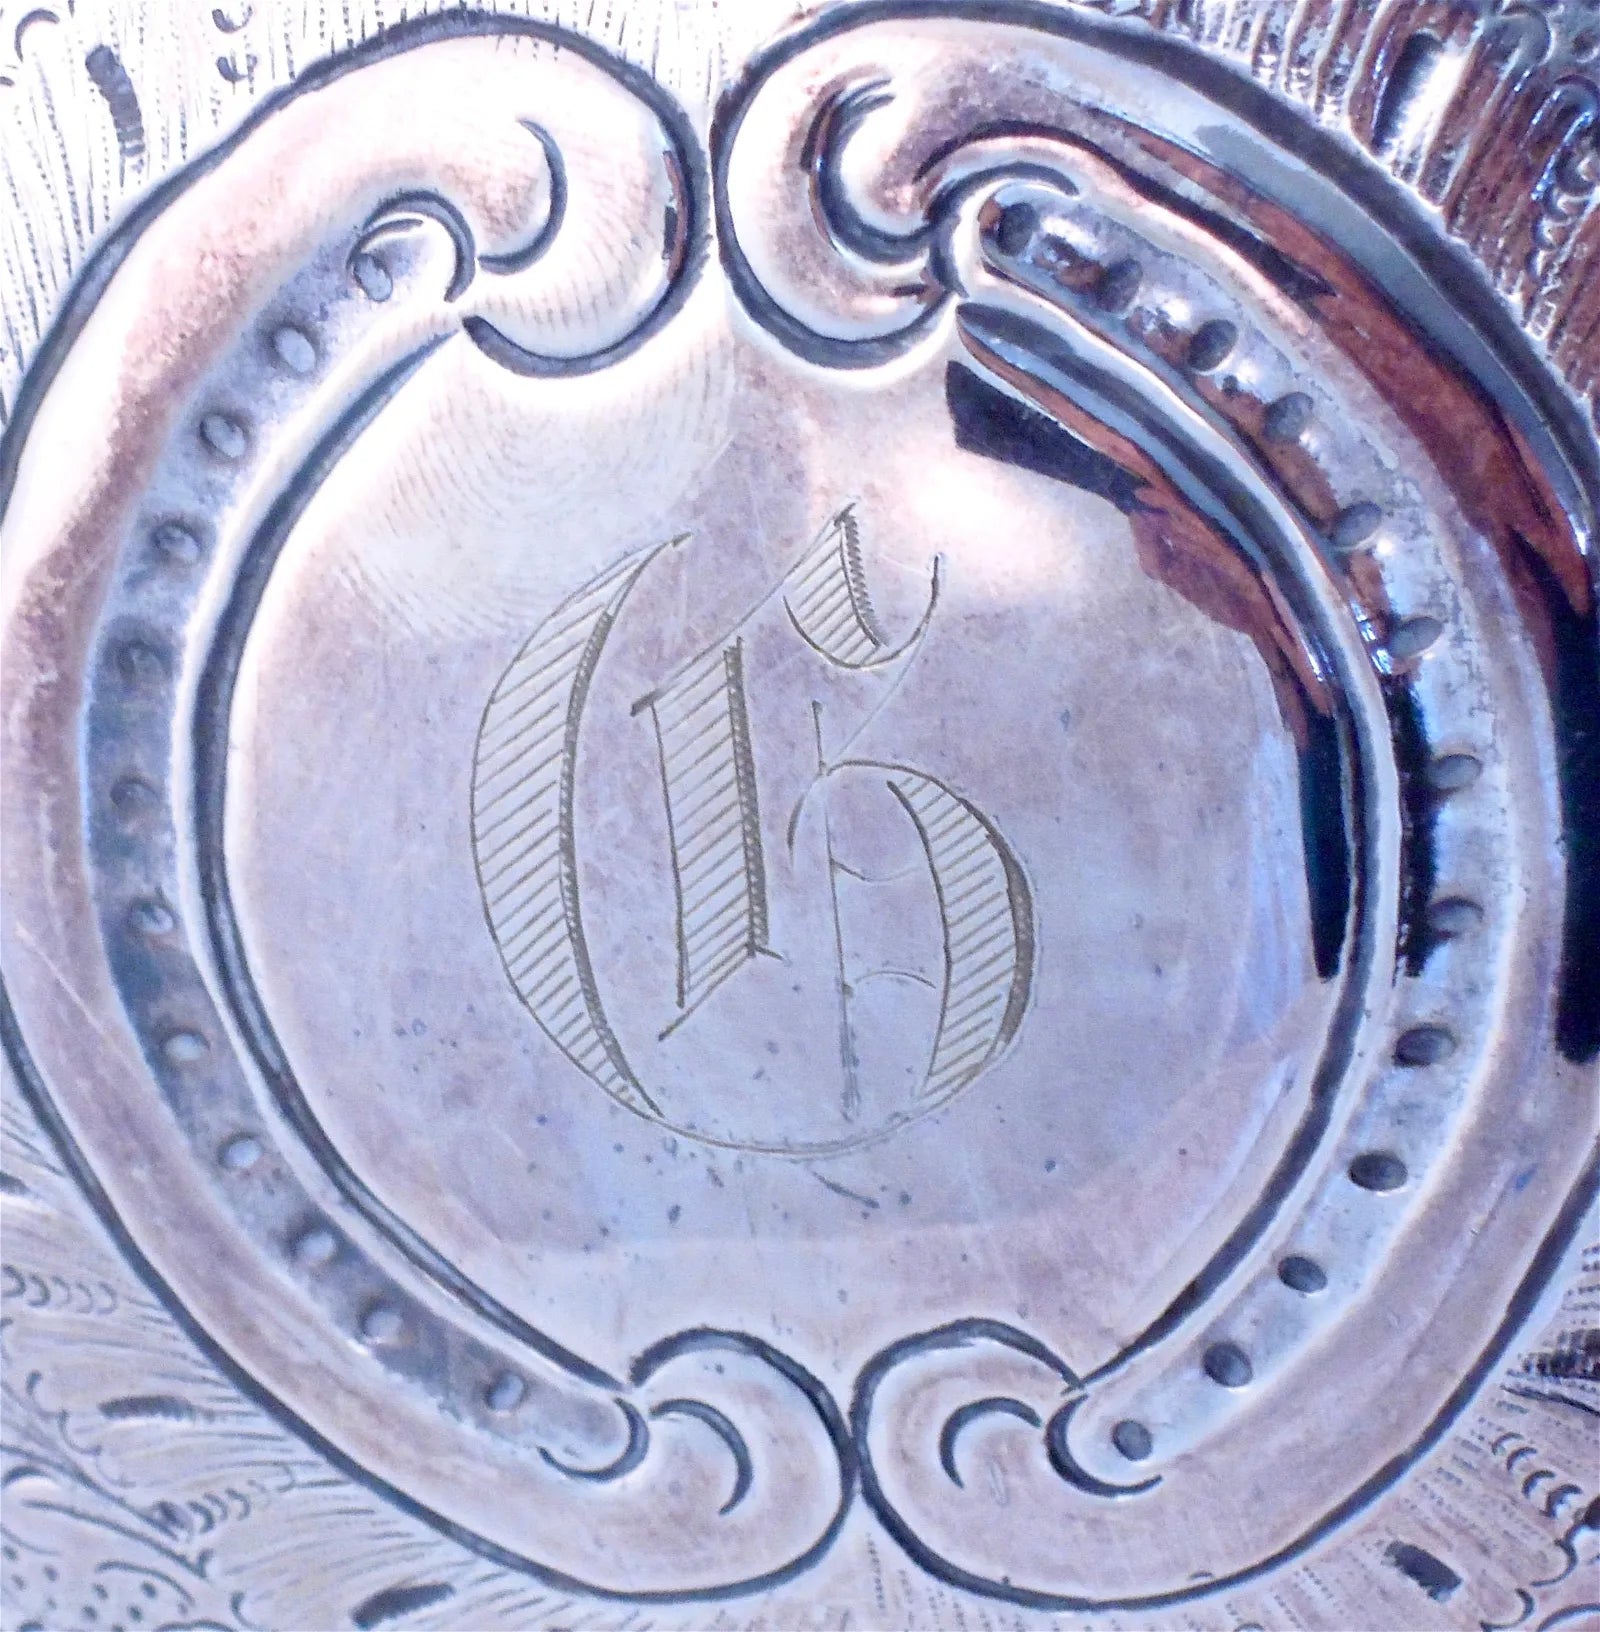 DA2-023: Late 19th Century English Sheffield Plate Hot Water Urn